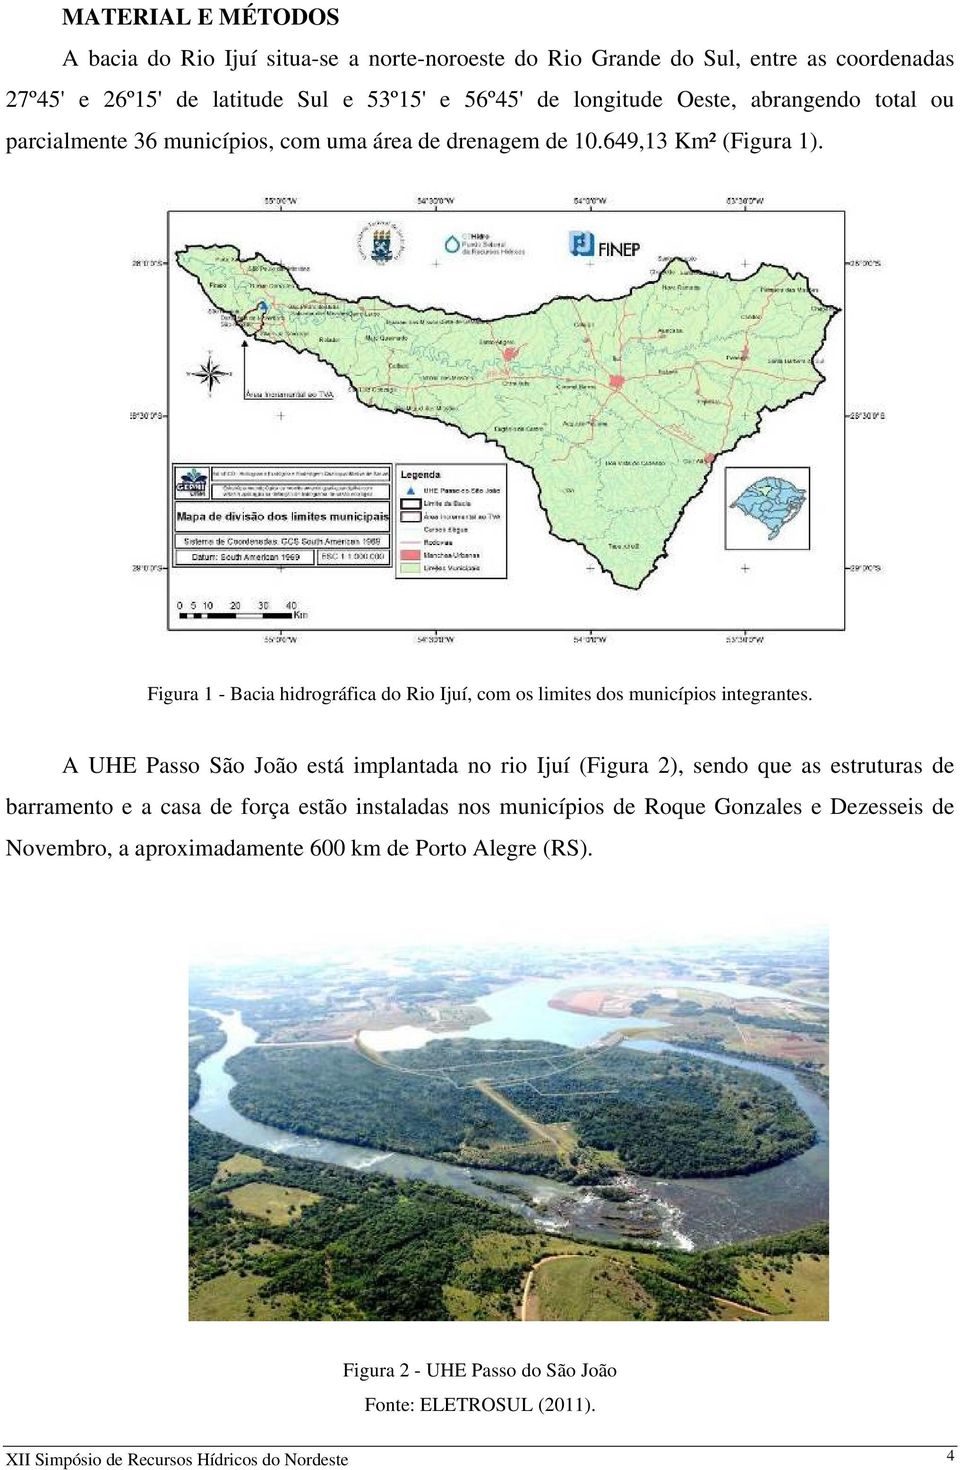 Figura 1 - Bacia hidrográfica do Rio Ijuí, com os limites dos municípios integrantes.